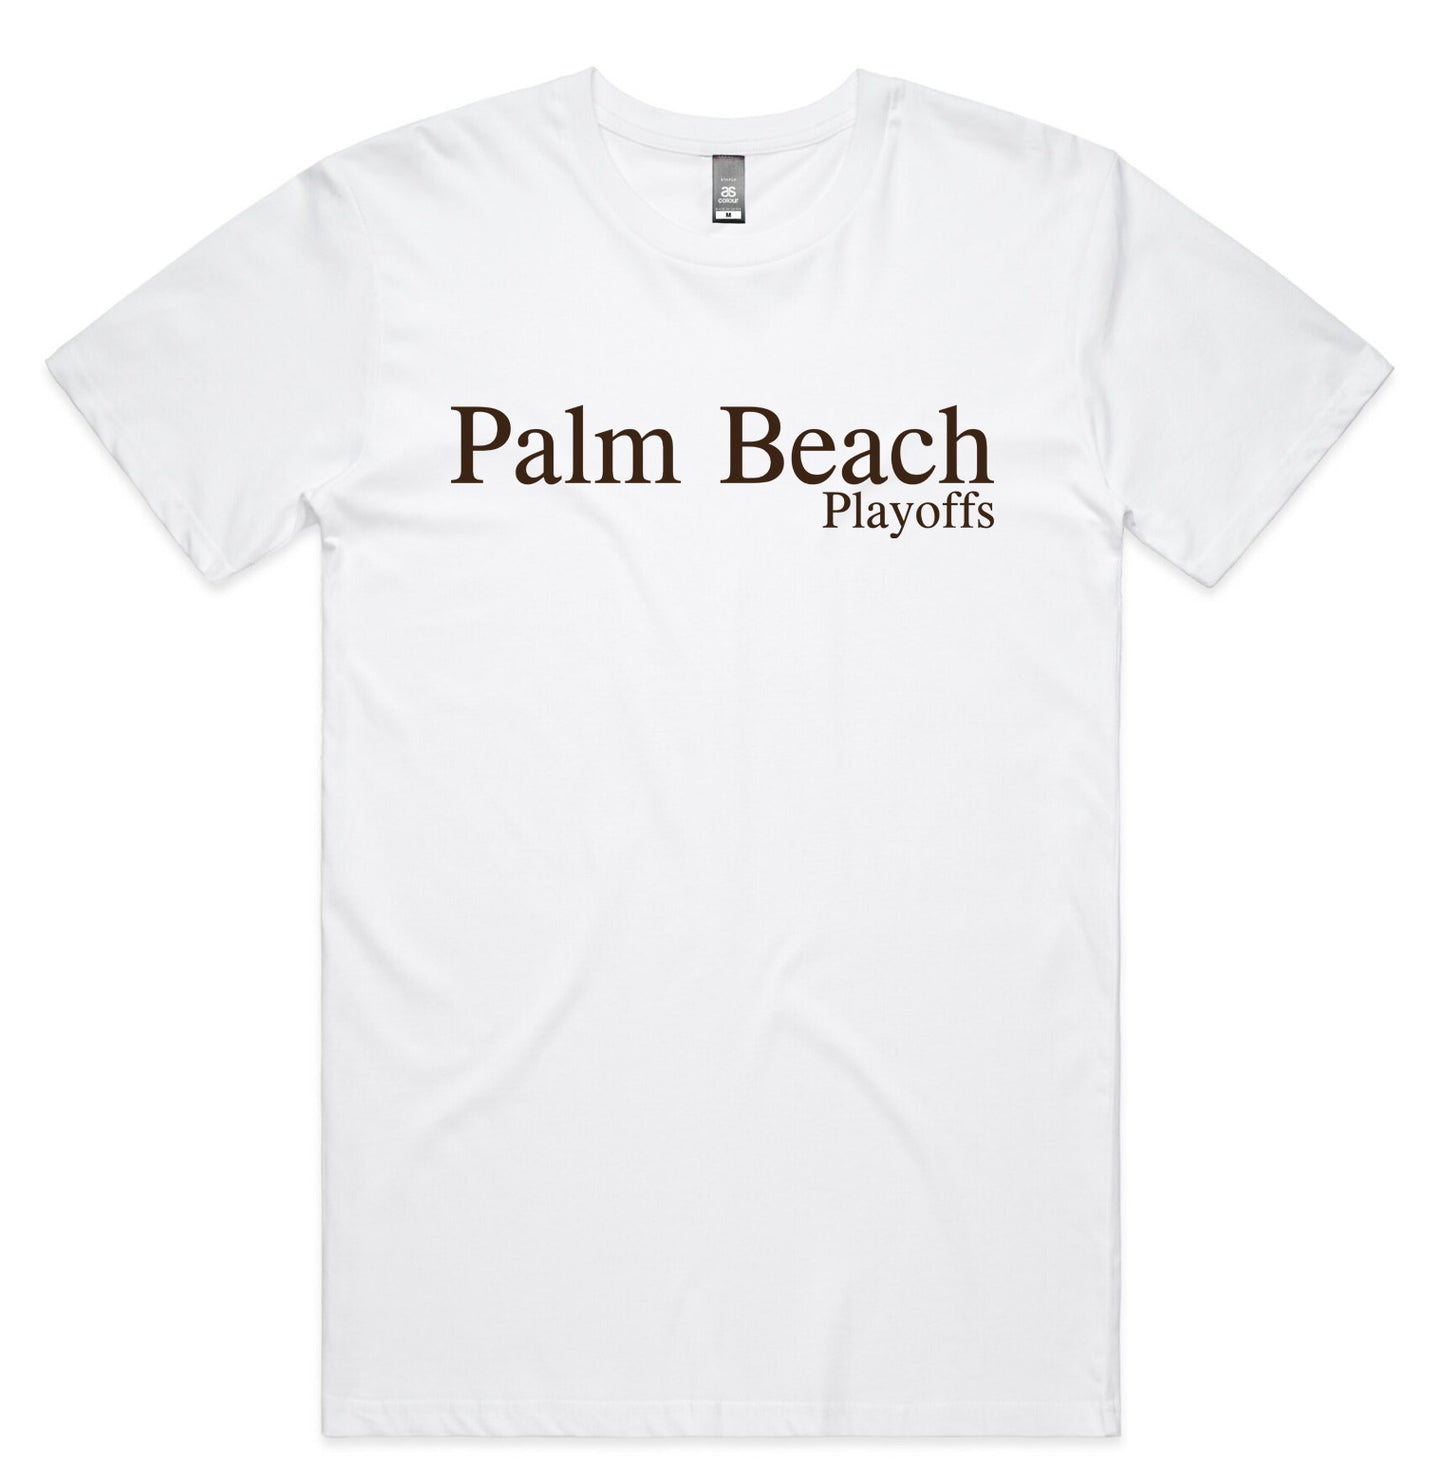 PALM BEACH PLAYOFFS T-SHIRT